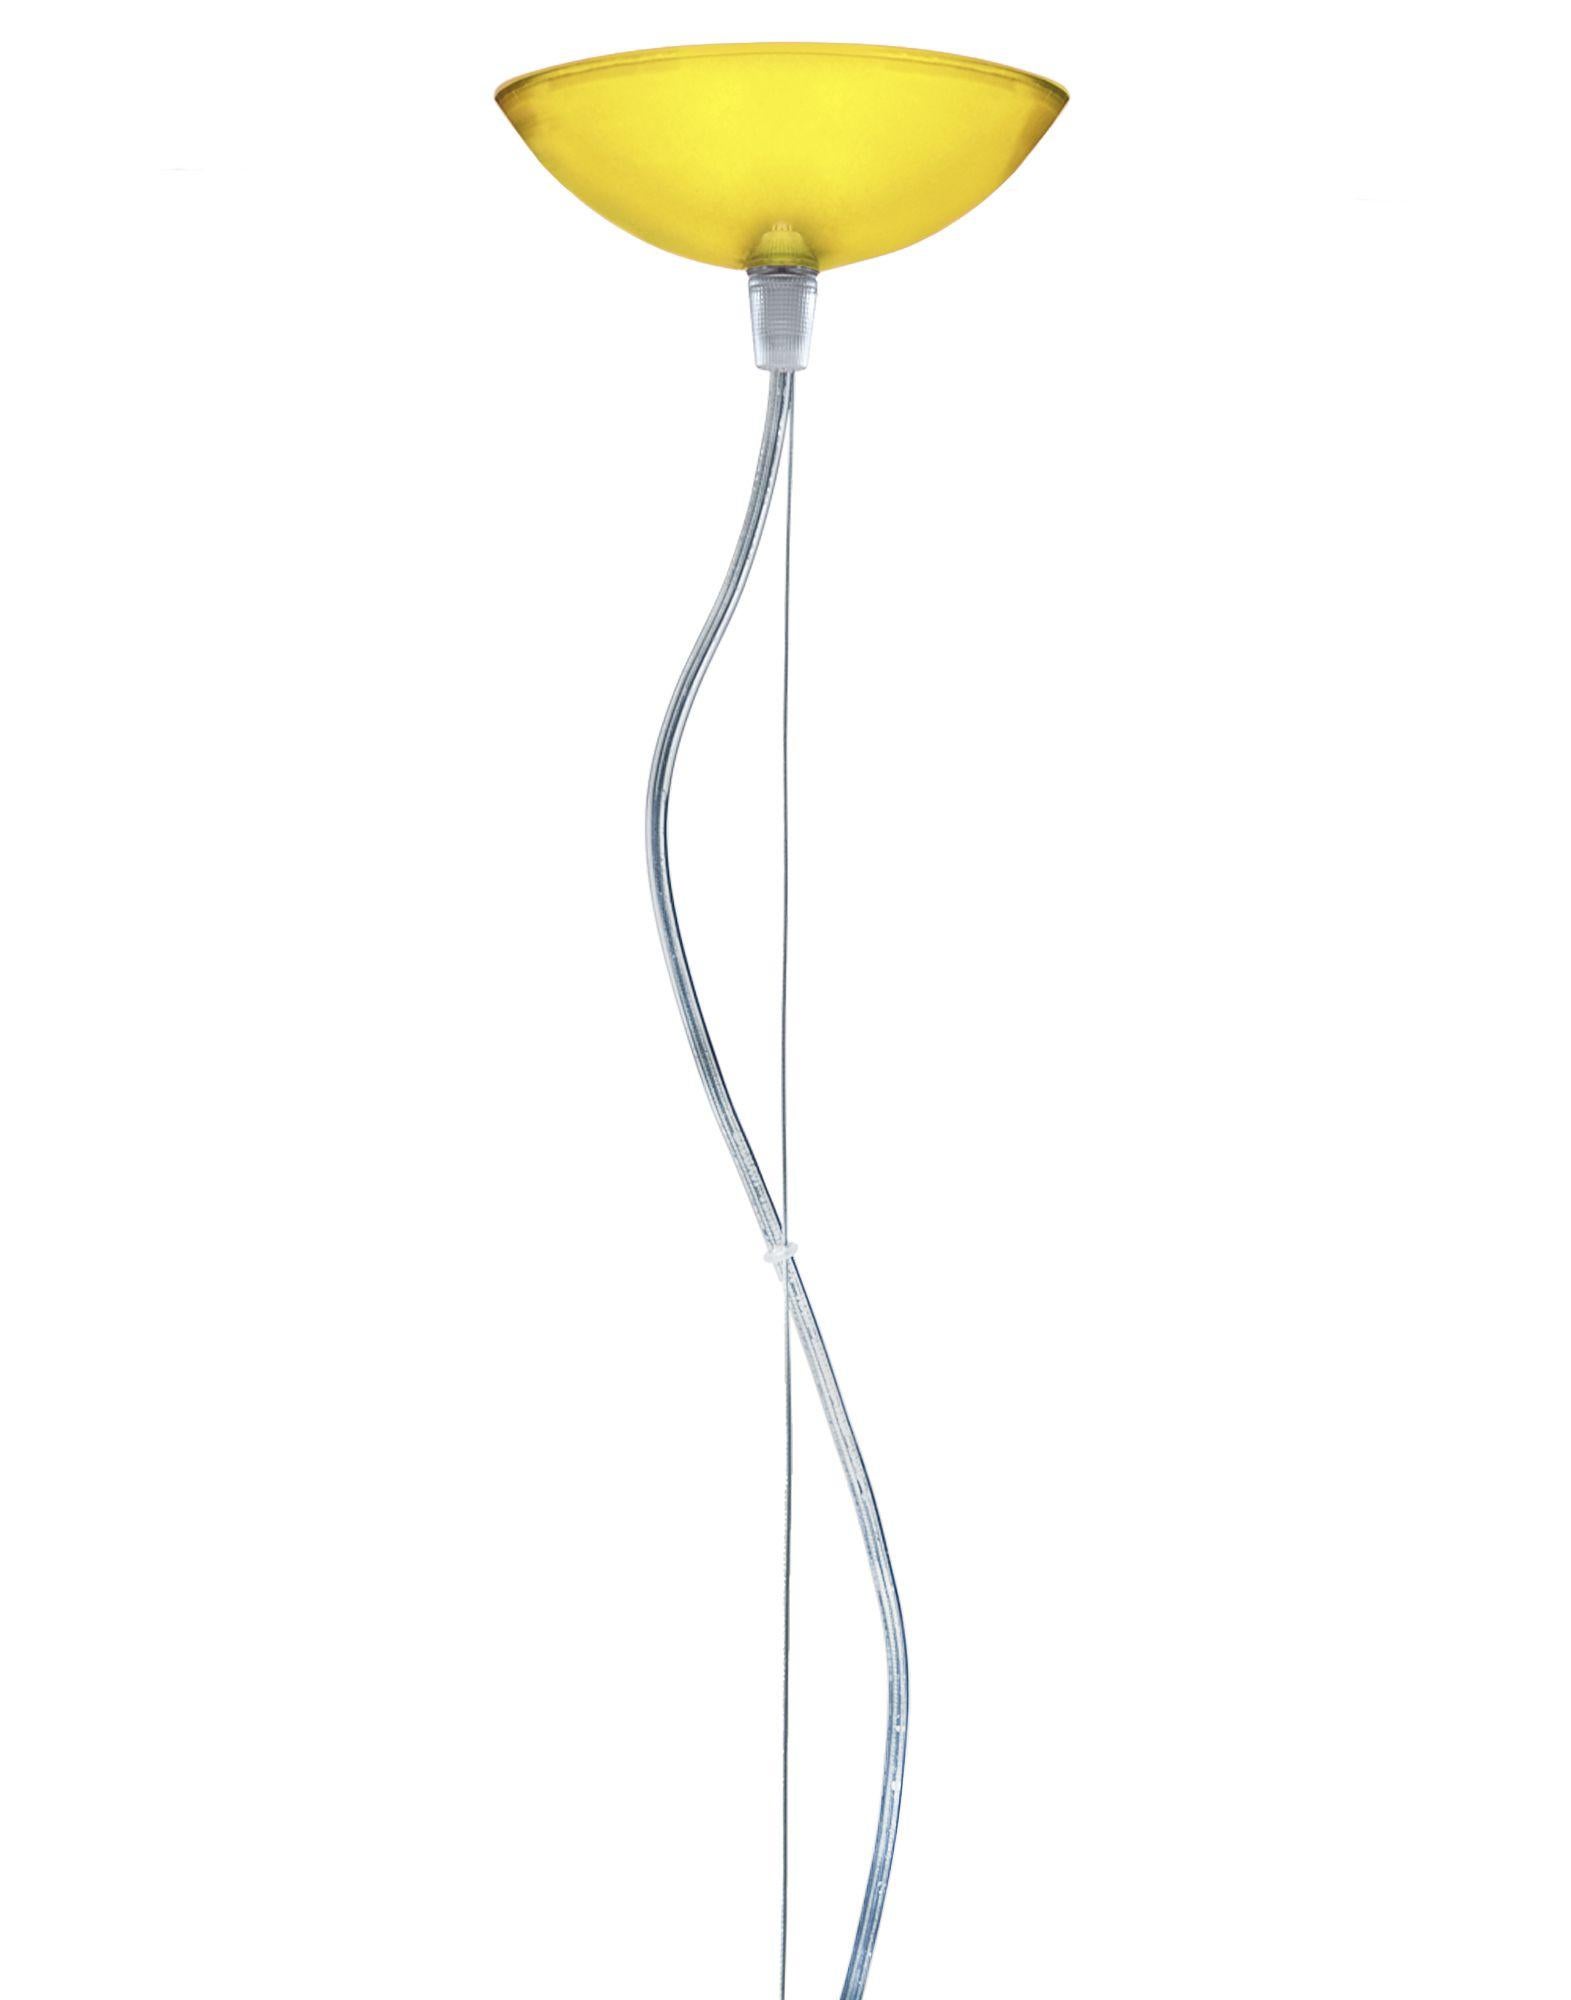 FL/Y Pendelleuchte klein in gelb. Es handelt sich um eine von Ferruccio Laviani im Jahr 2002 entworfene Kollektion von Pendelleuchten.

Abmessungen: Höhe des Schirms: 11 Zoll; Durchmesser: 15 Zoll; Gewicht der Einheit: 1,08 kg. Hergestellt aus: